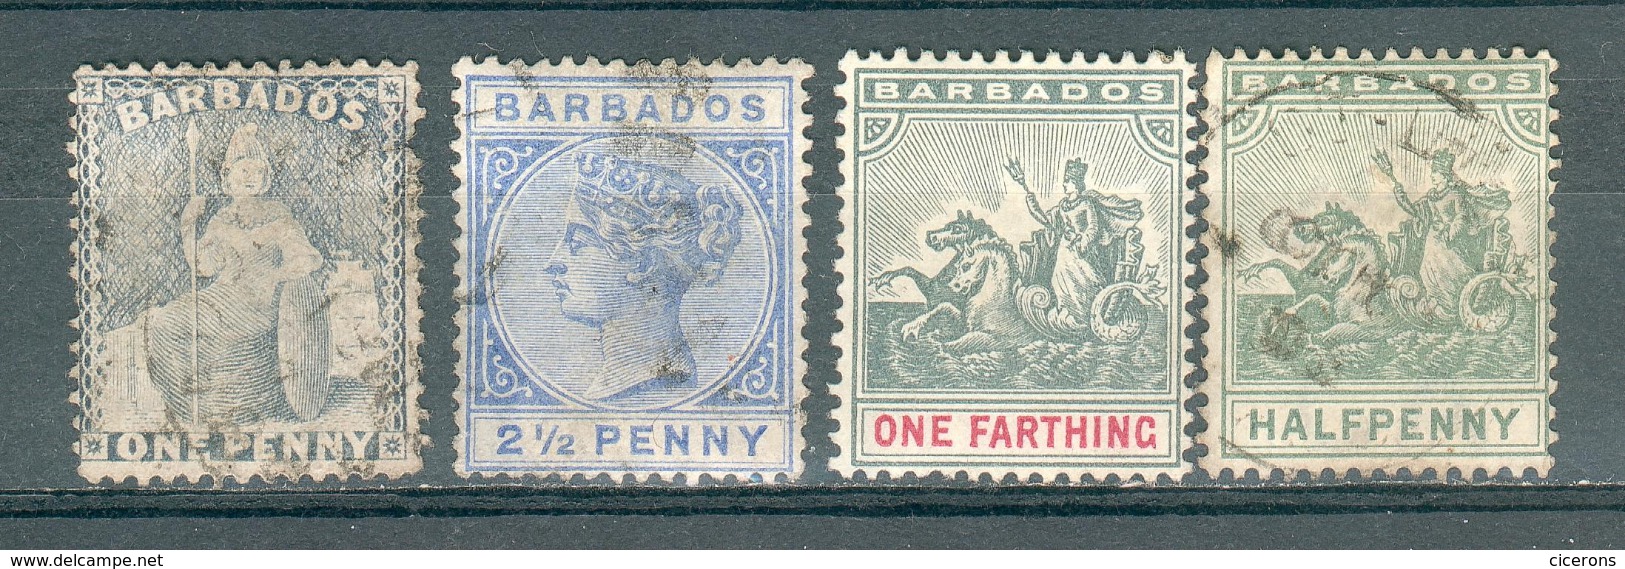 BARBADES ; BARBADOS ; Colonie Britanique ; 1875-1903 ; Y&T N° 33-41-49-50  ; Lot : 014 ; Oblitéré/neuf - Barbades (...-1966)